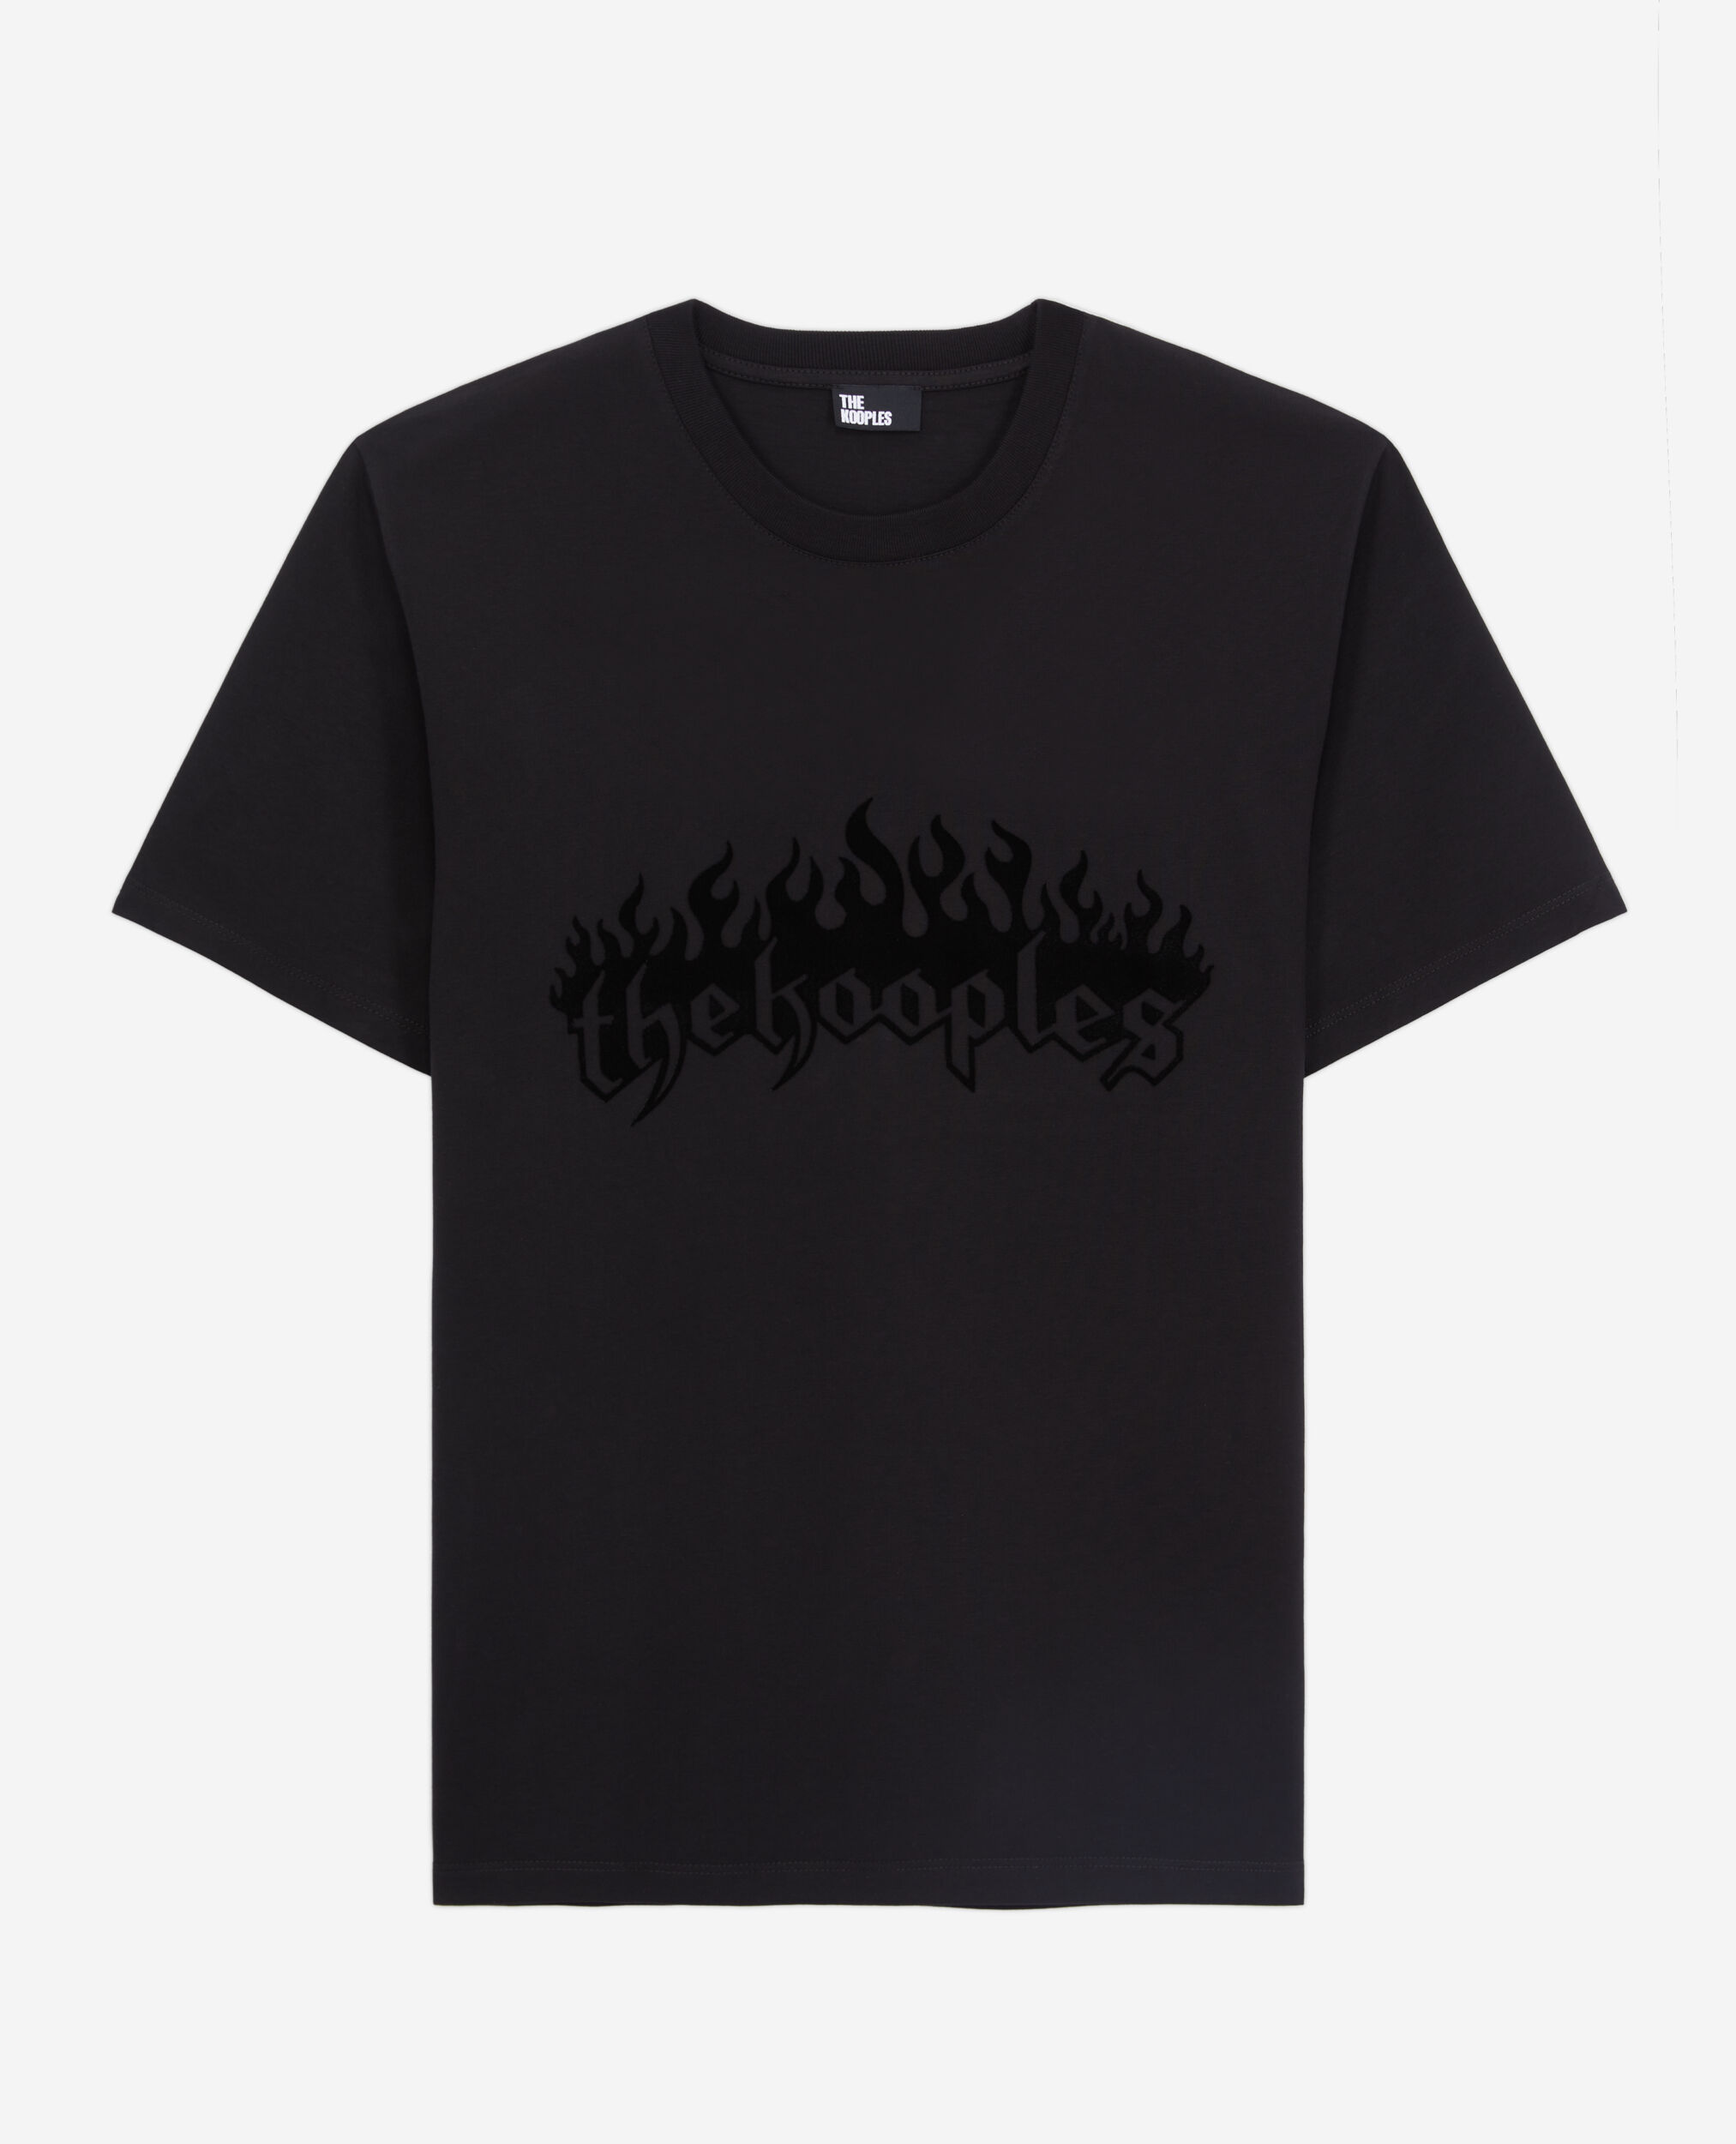 Camiseta negra con flocado Kooples on fire terciopelo para hombre, BLACK, hi-res image number null